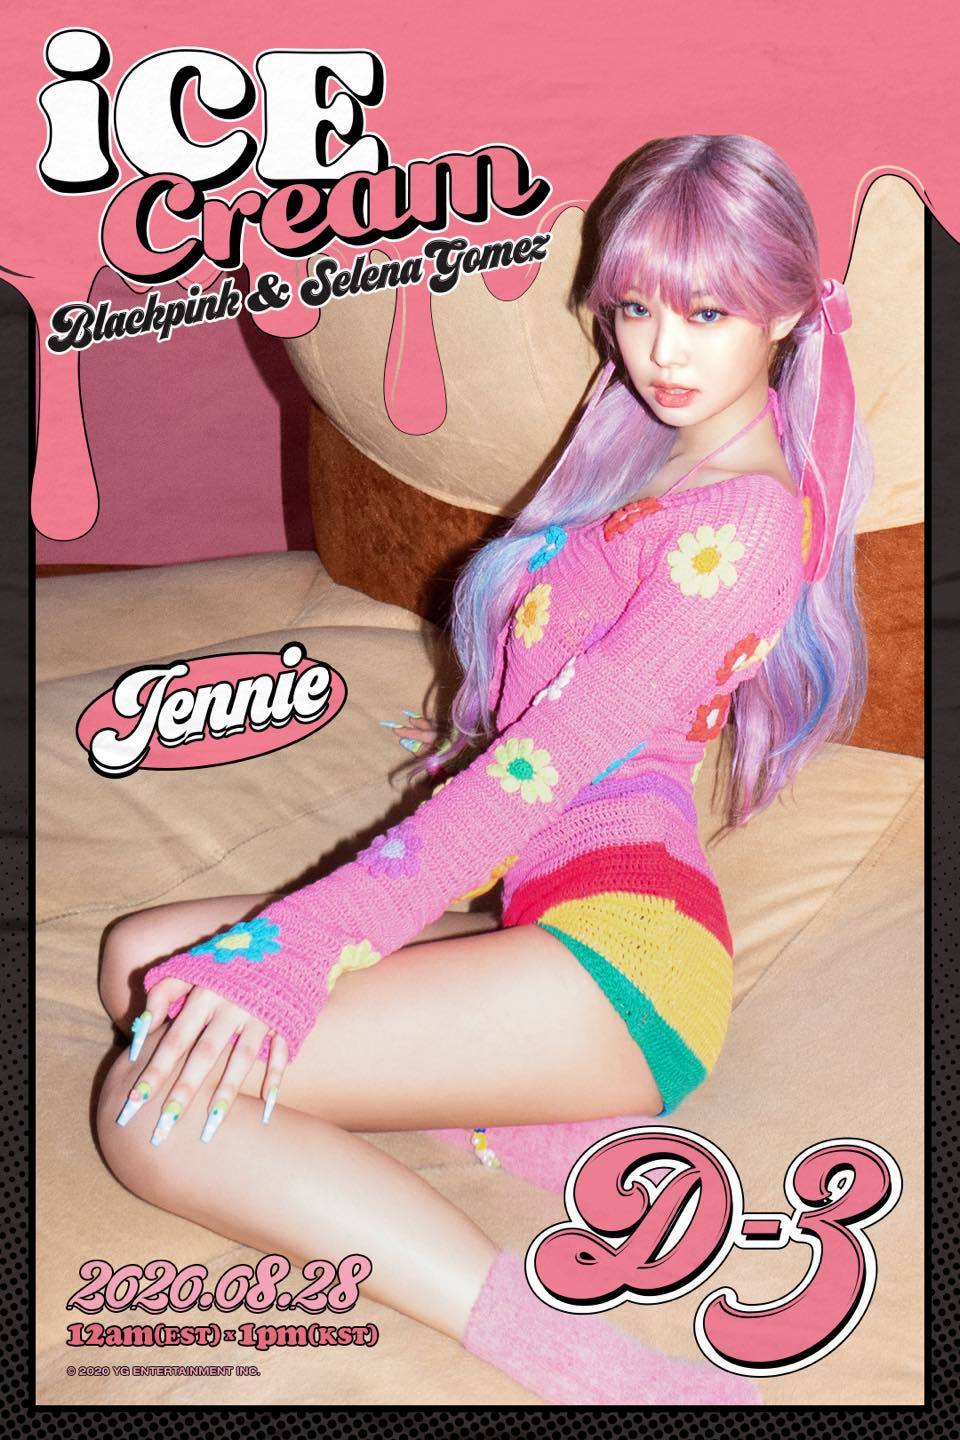 
Poster của Jennie. (Ảnh:Twitter).